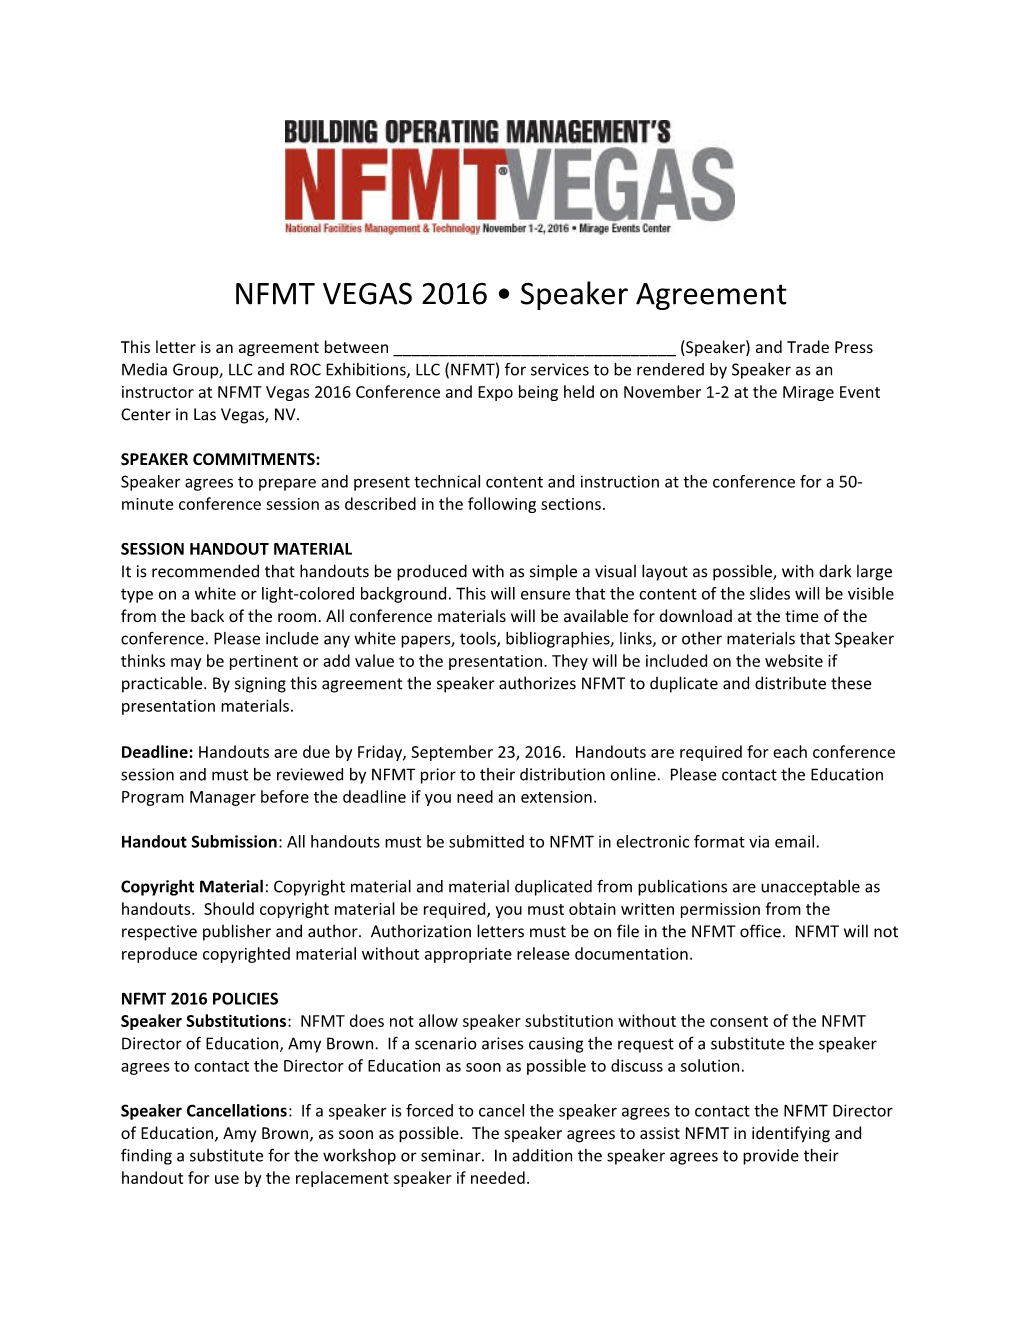 NFMT VEGAS 2016 Speaker Agreement